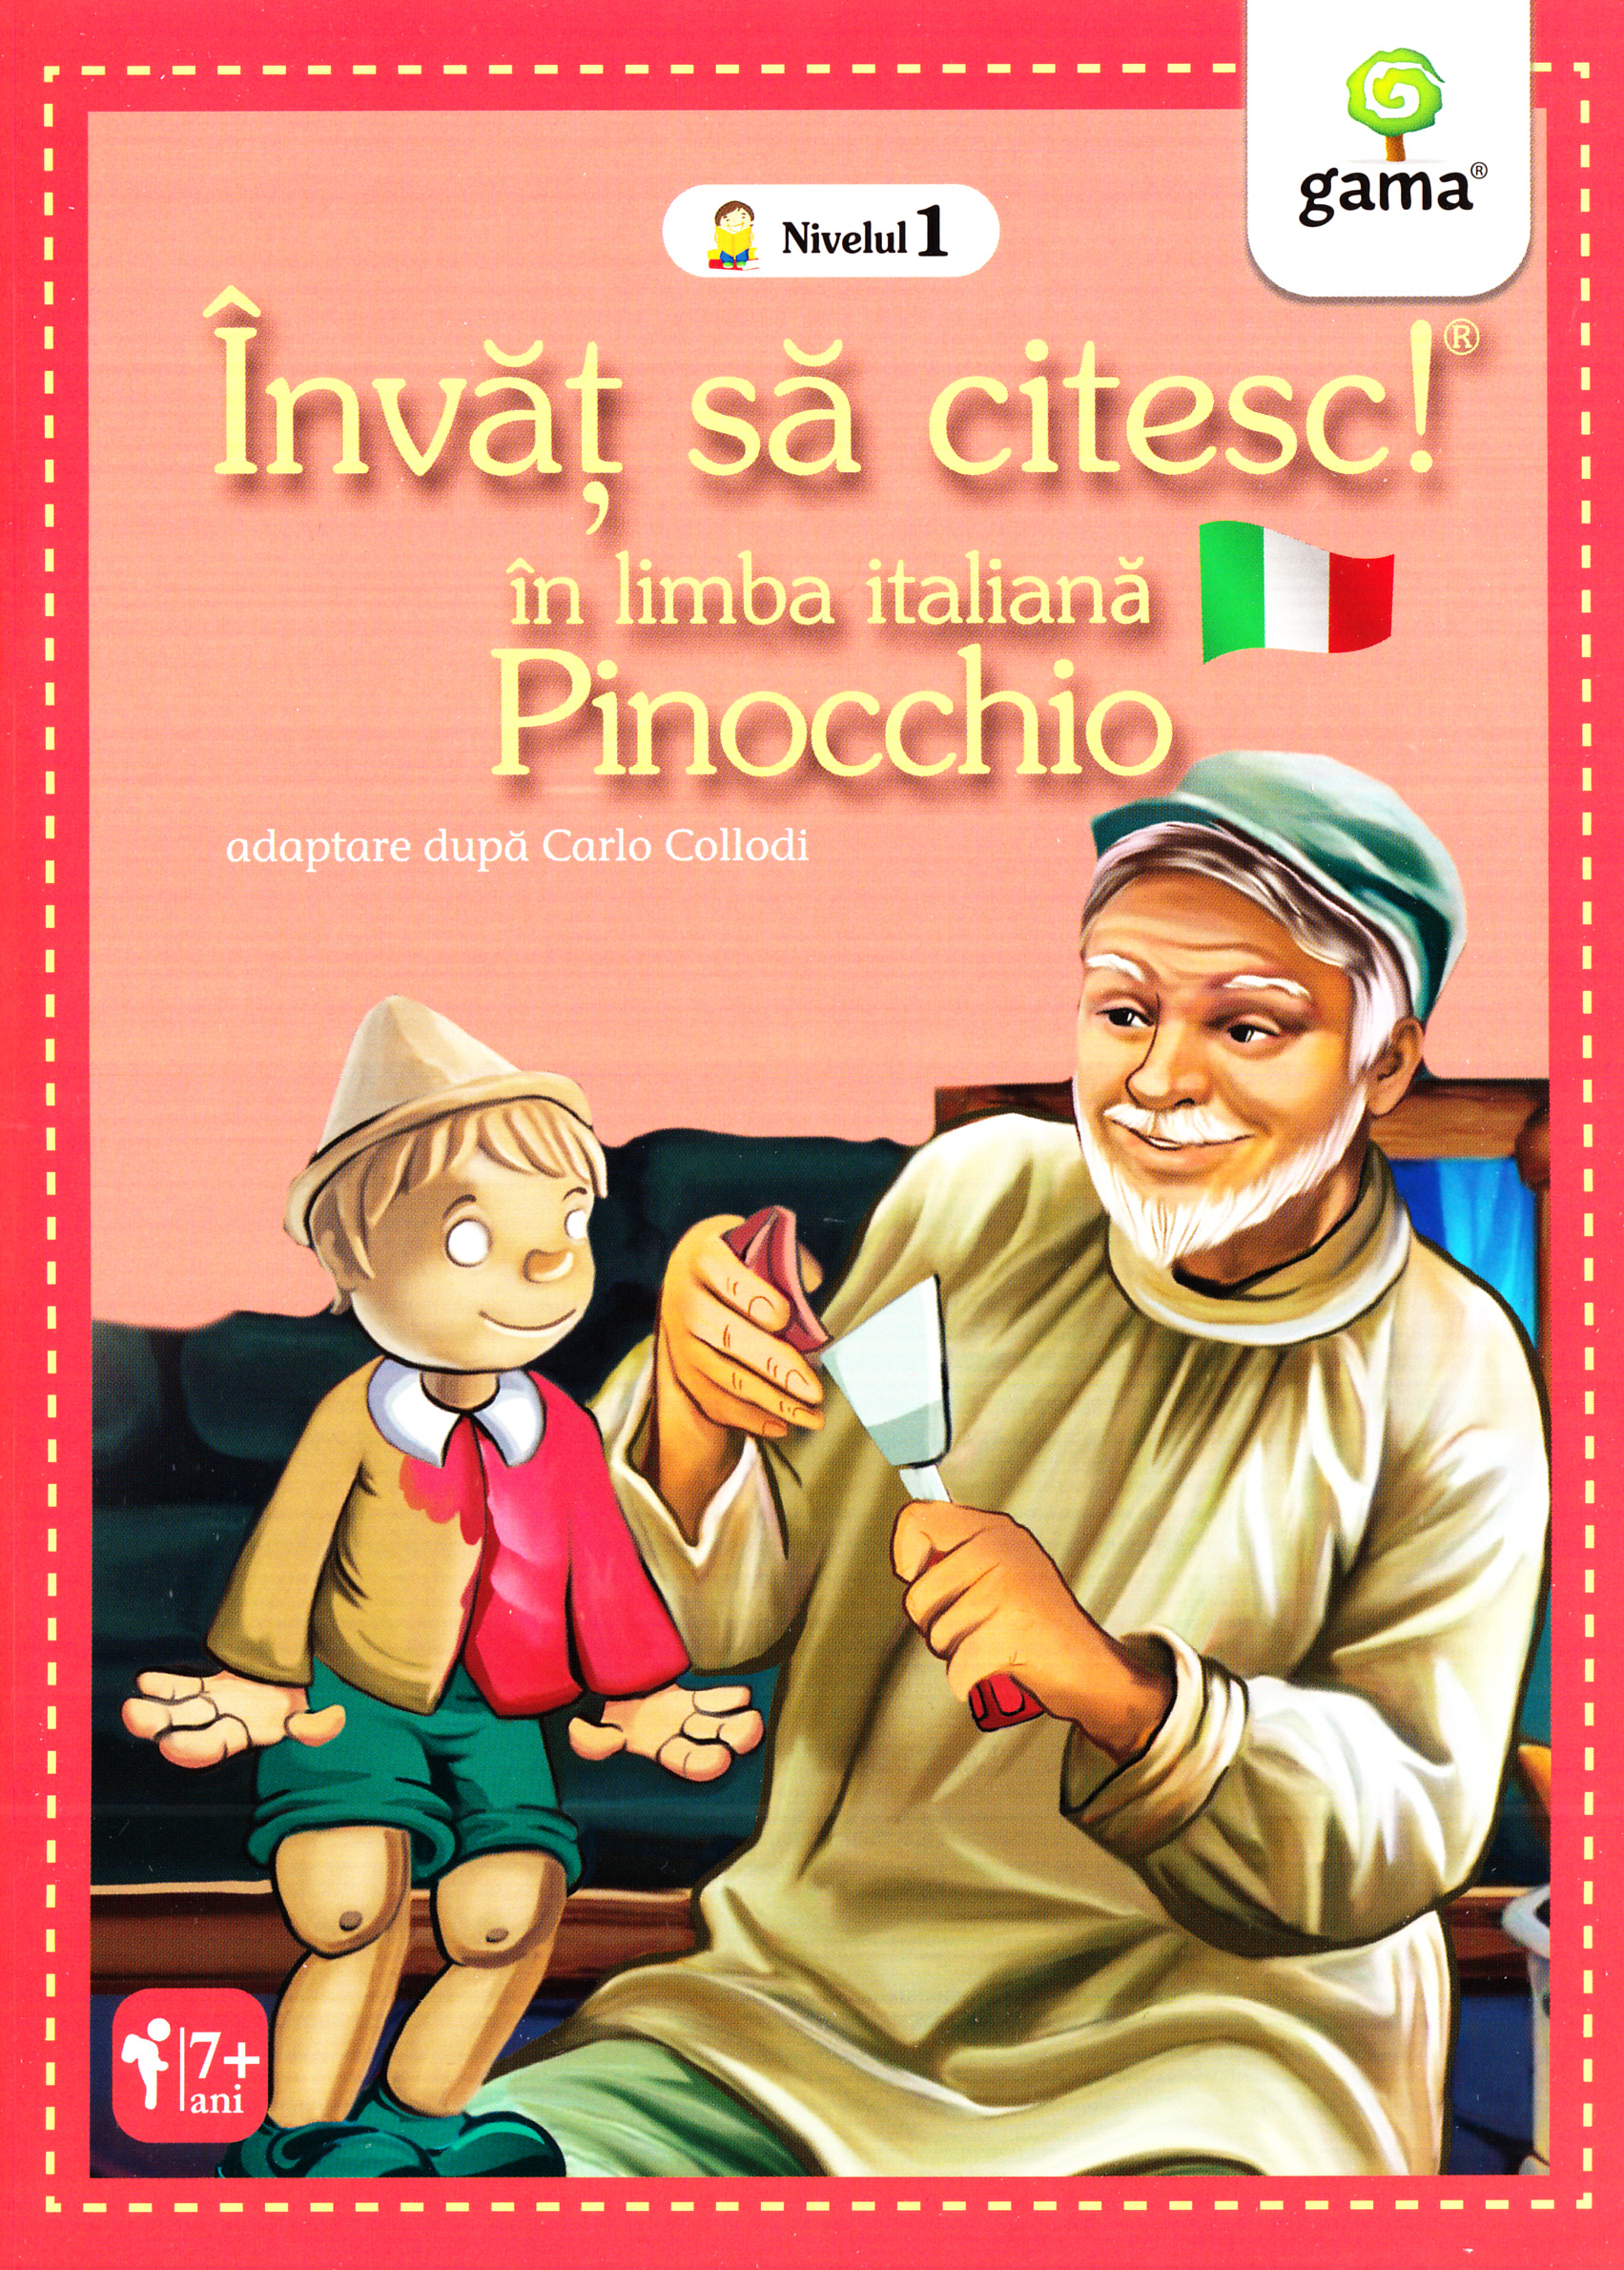 Invat sa citesc! In limba italiana - Pinocchio - Nivelul 1